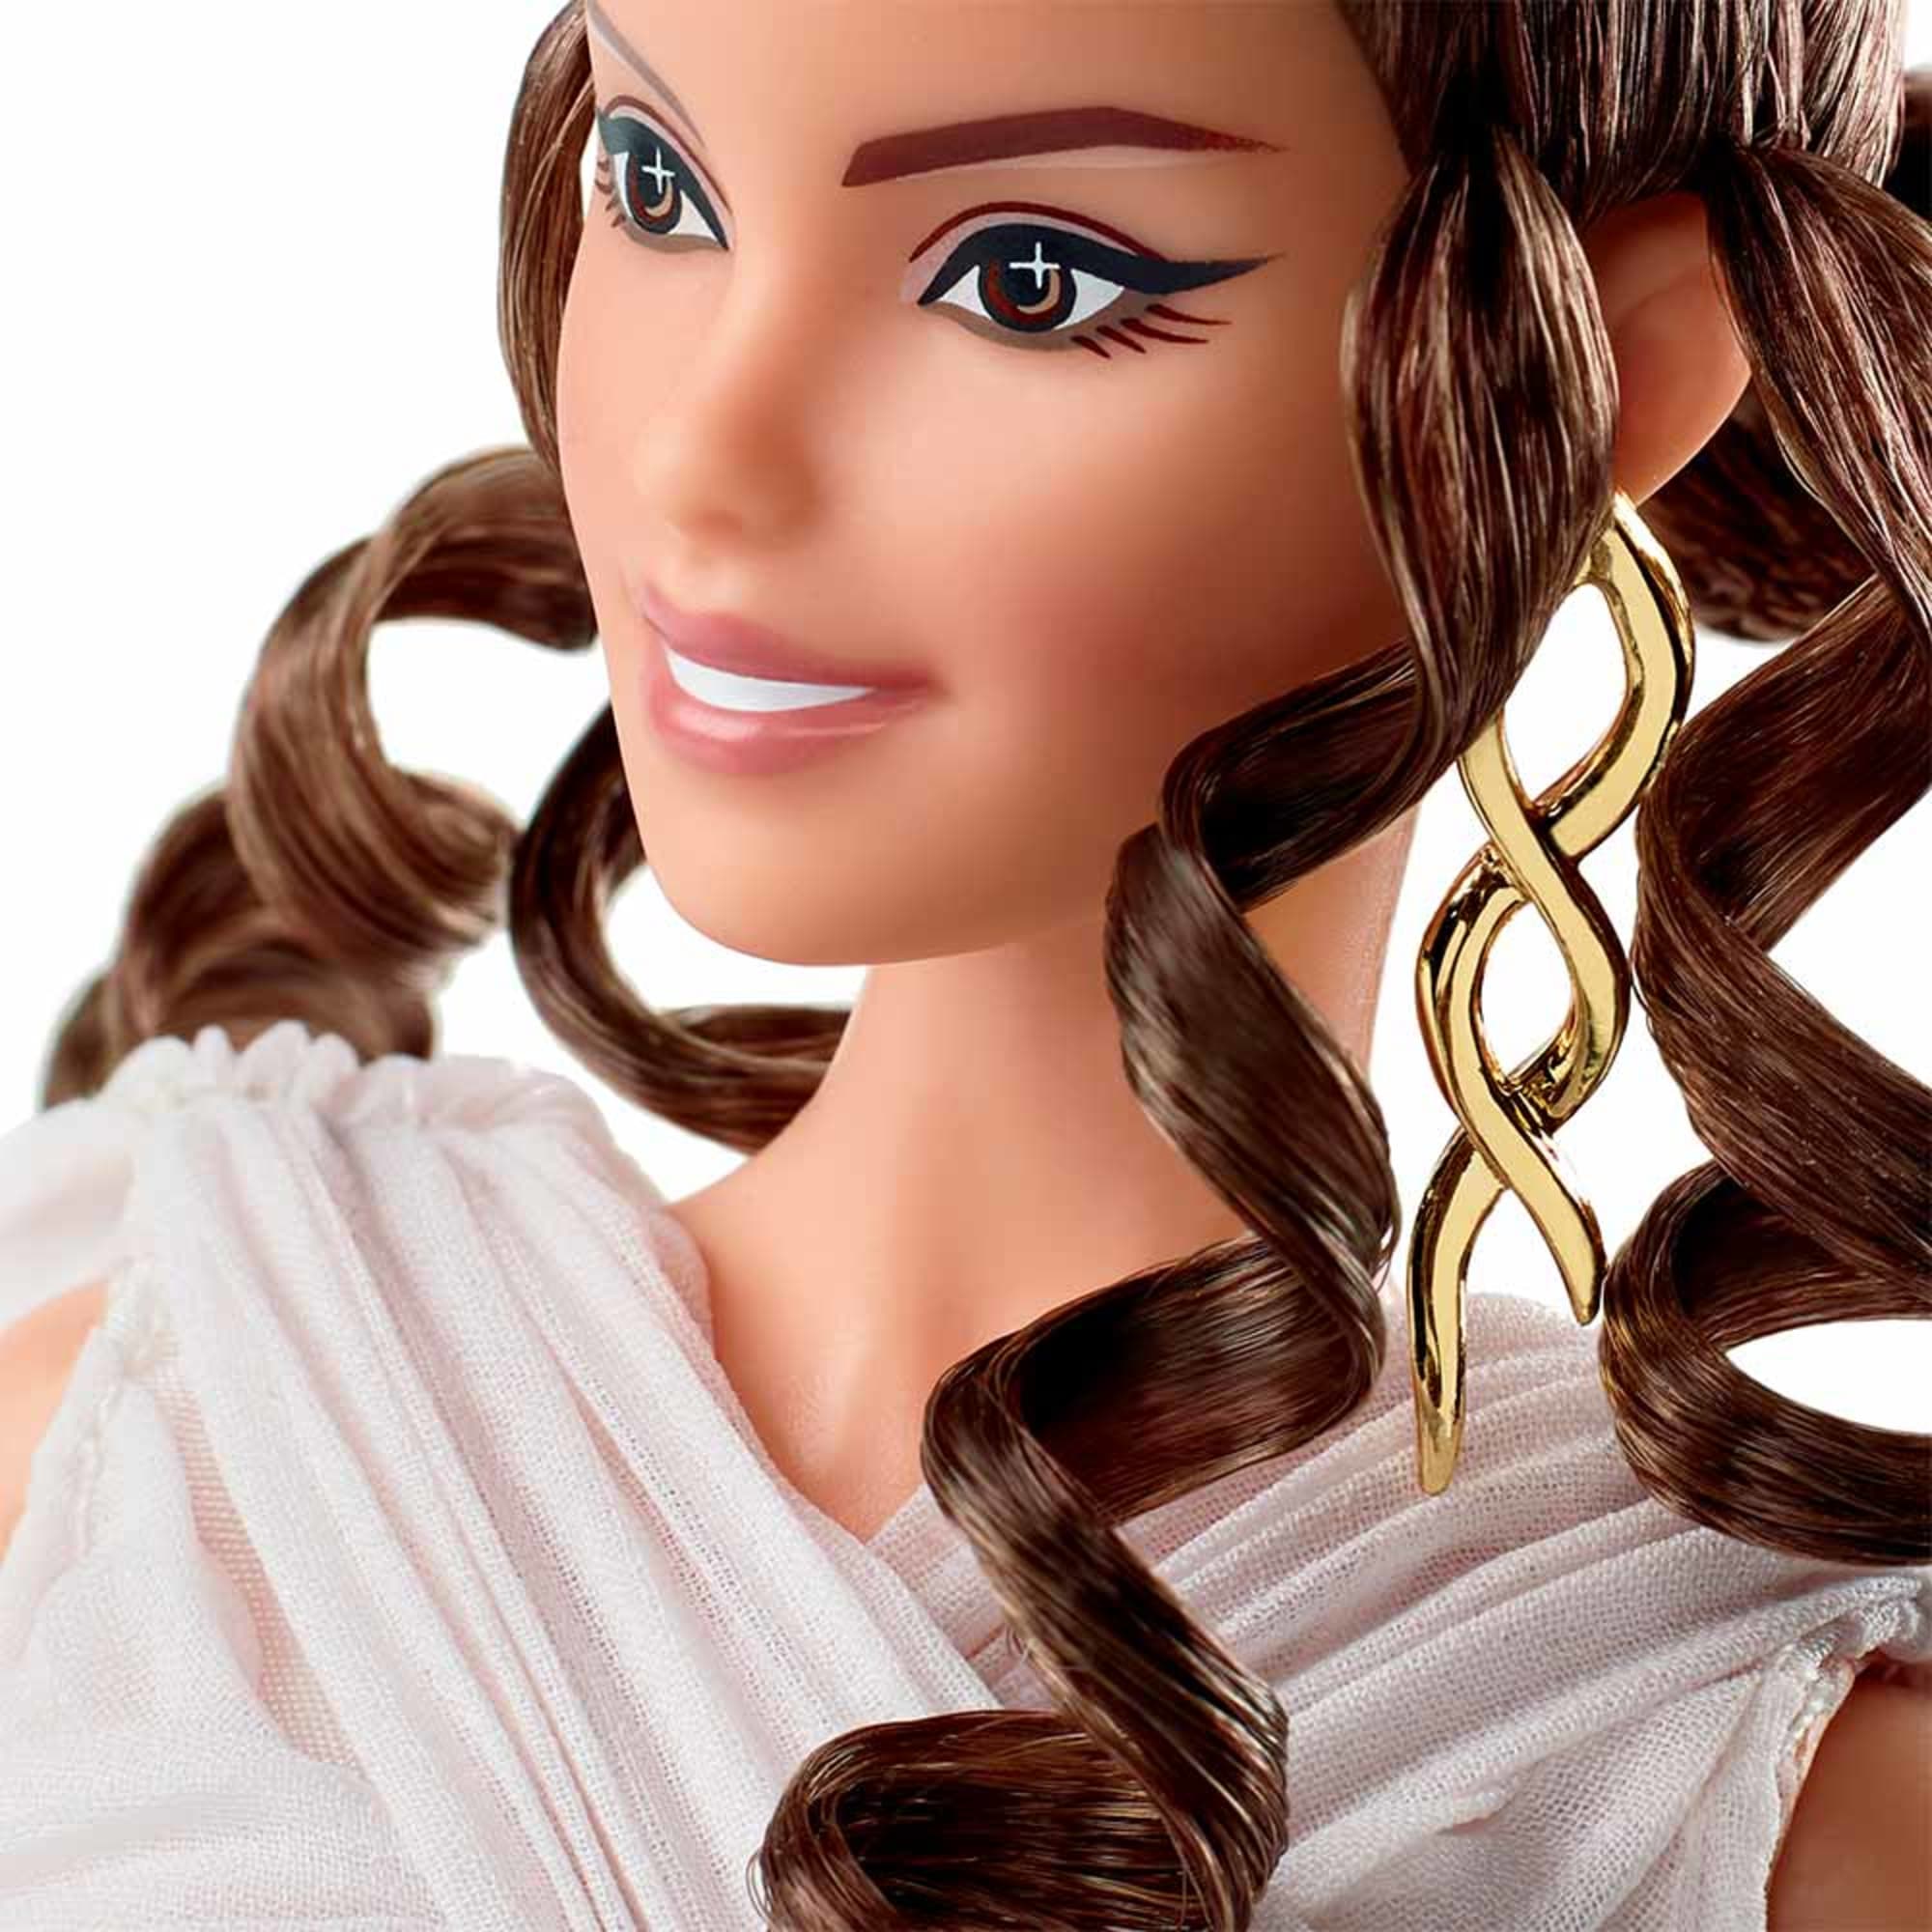 Star Wars Rey x Barbie Doll